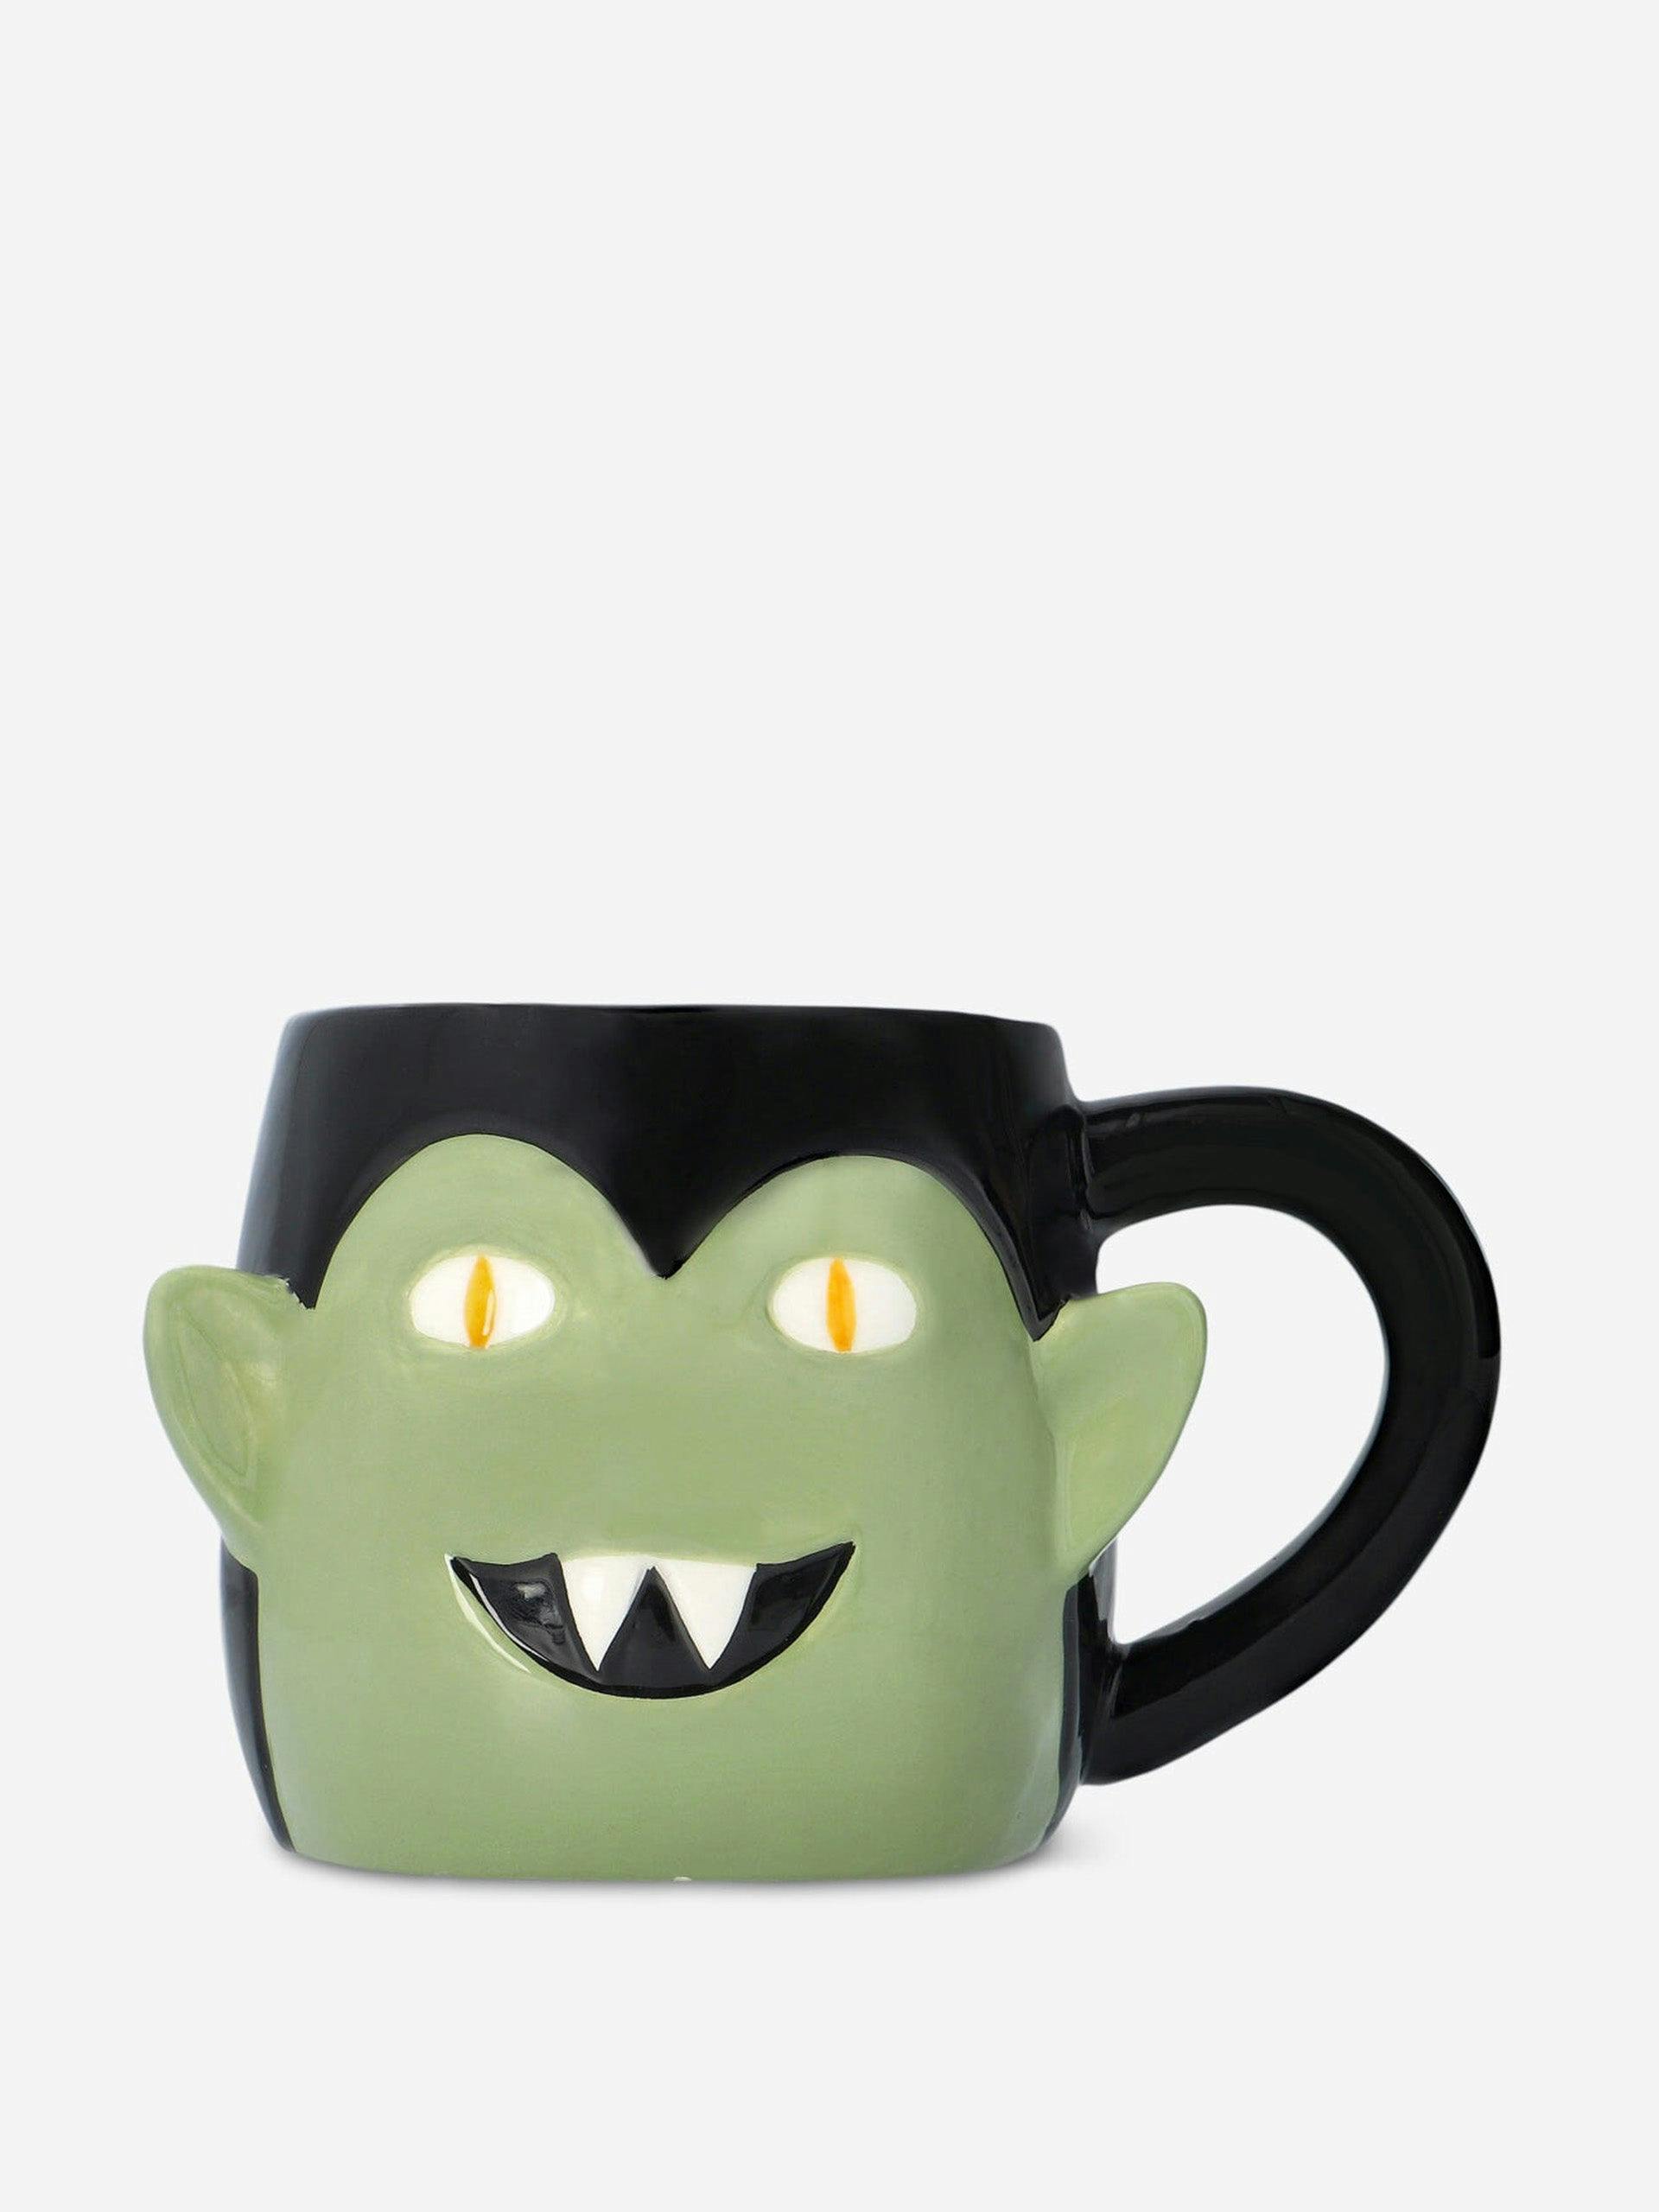 Dracula mug in black and green